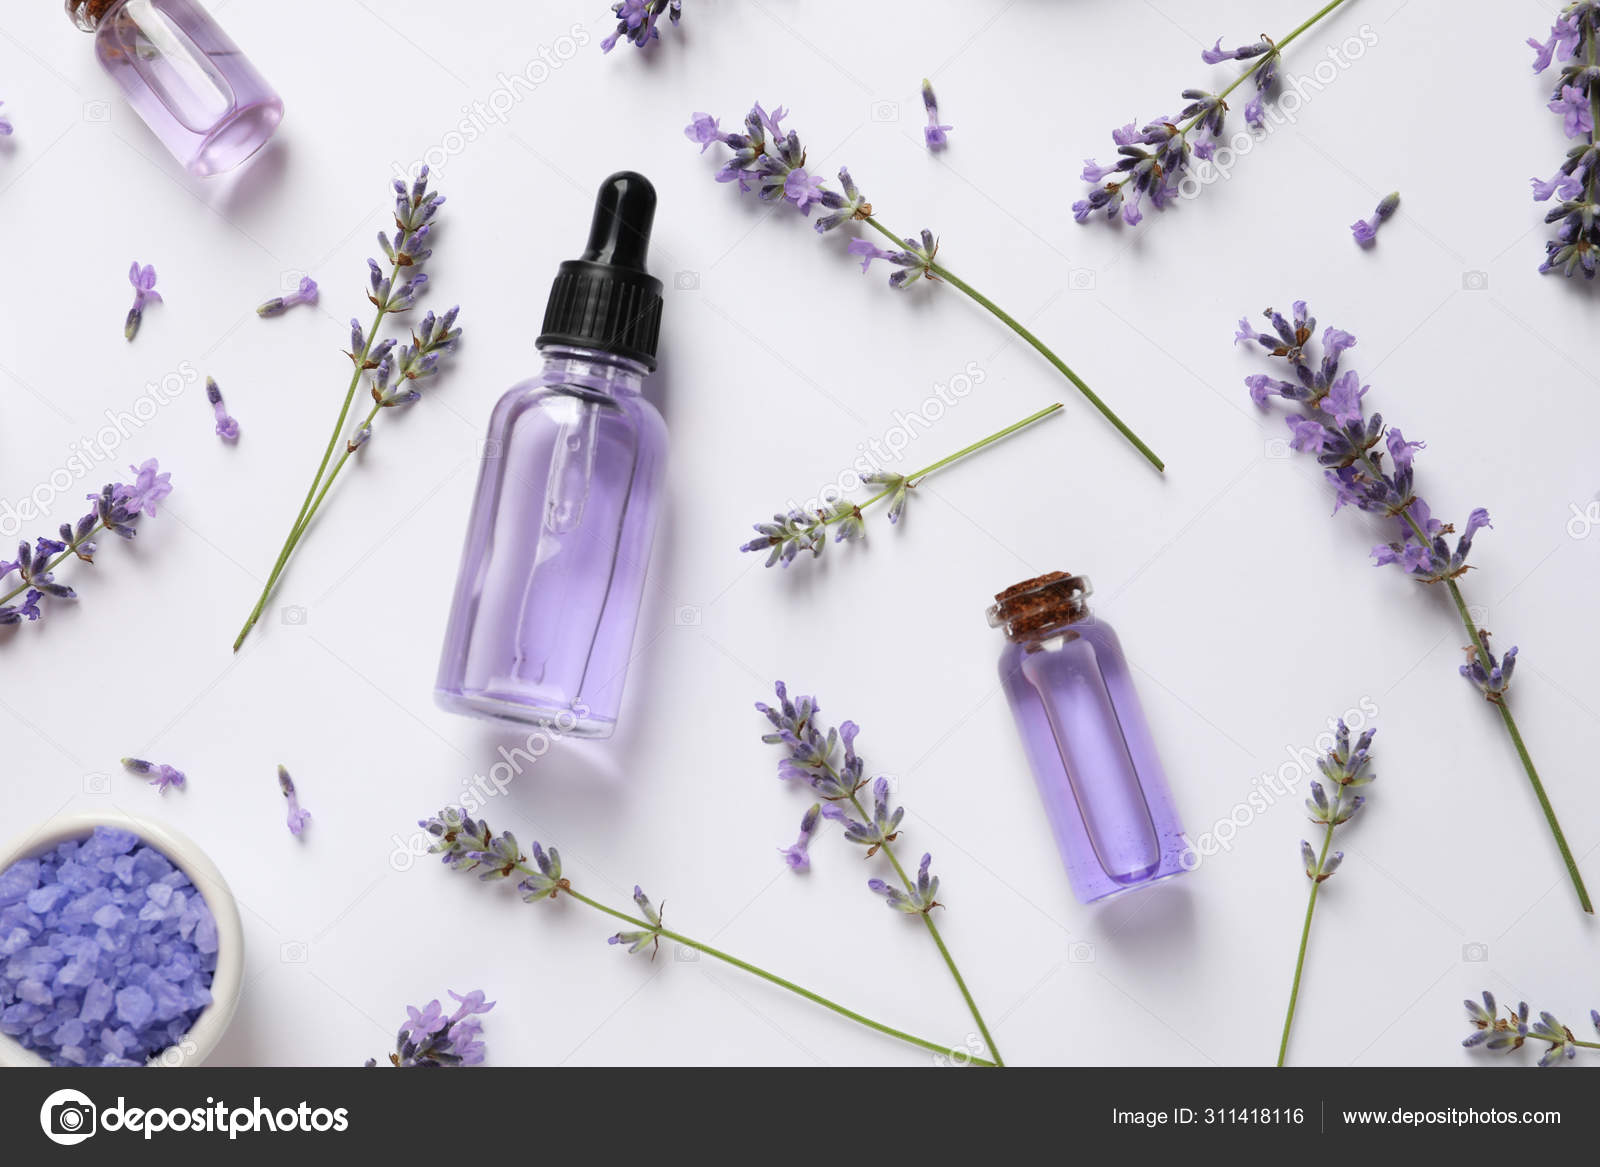 Composição com produtos cosméticos de lavanda natural e flores sobre fundo  branco, vista superior — Fotografias de Stock © NewAfrica #311418116